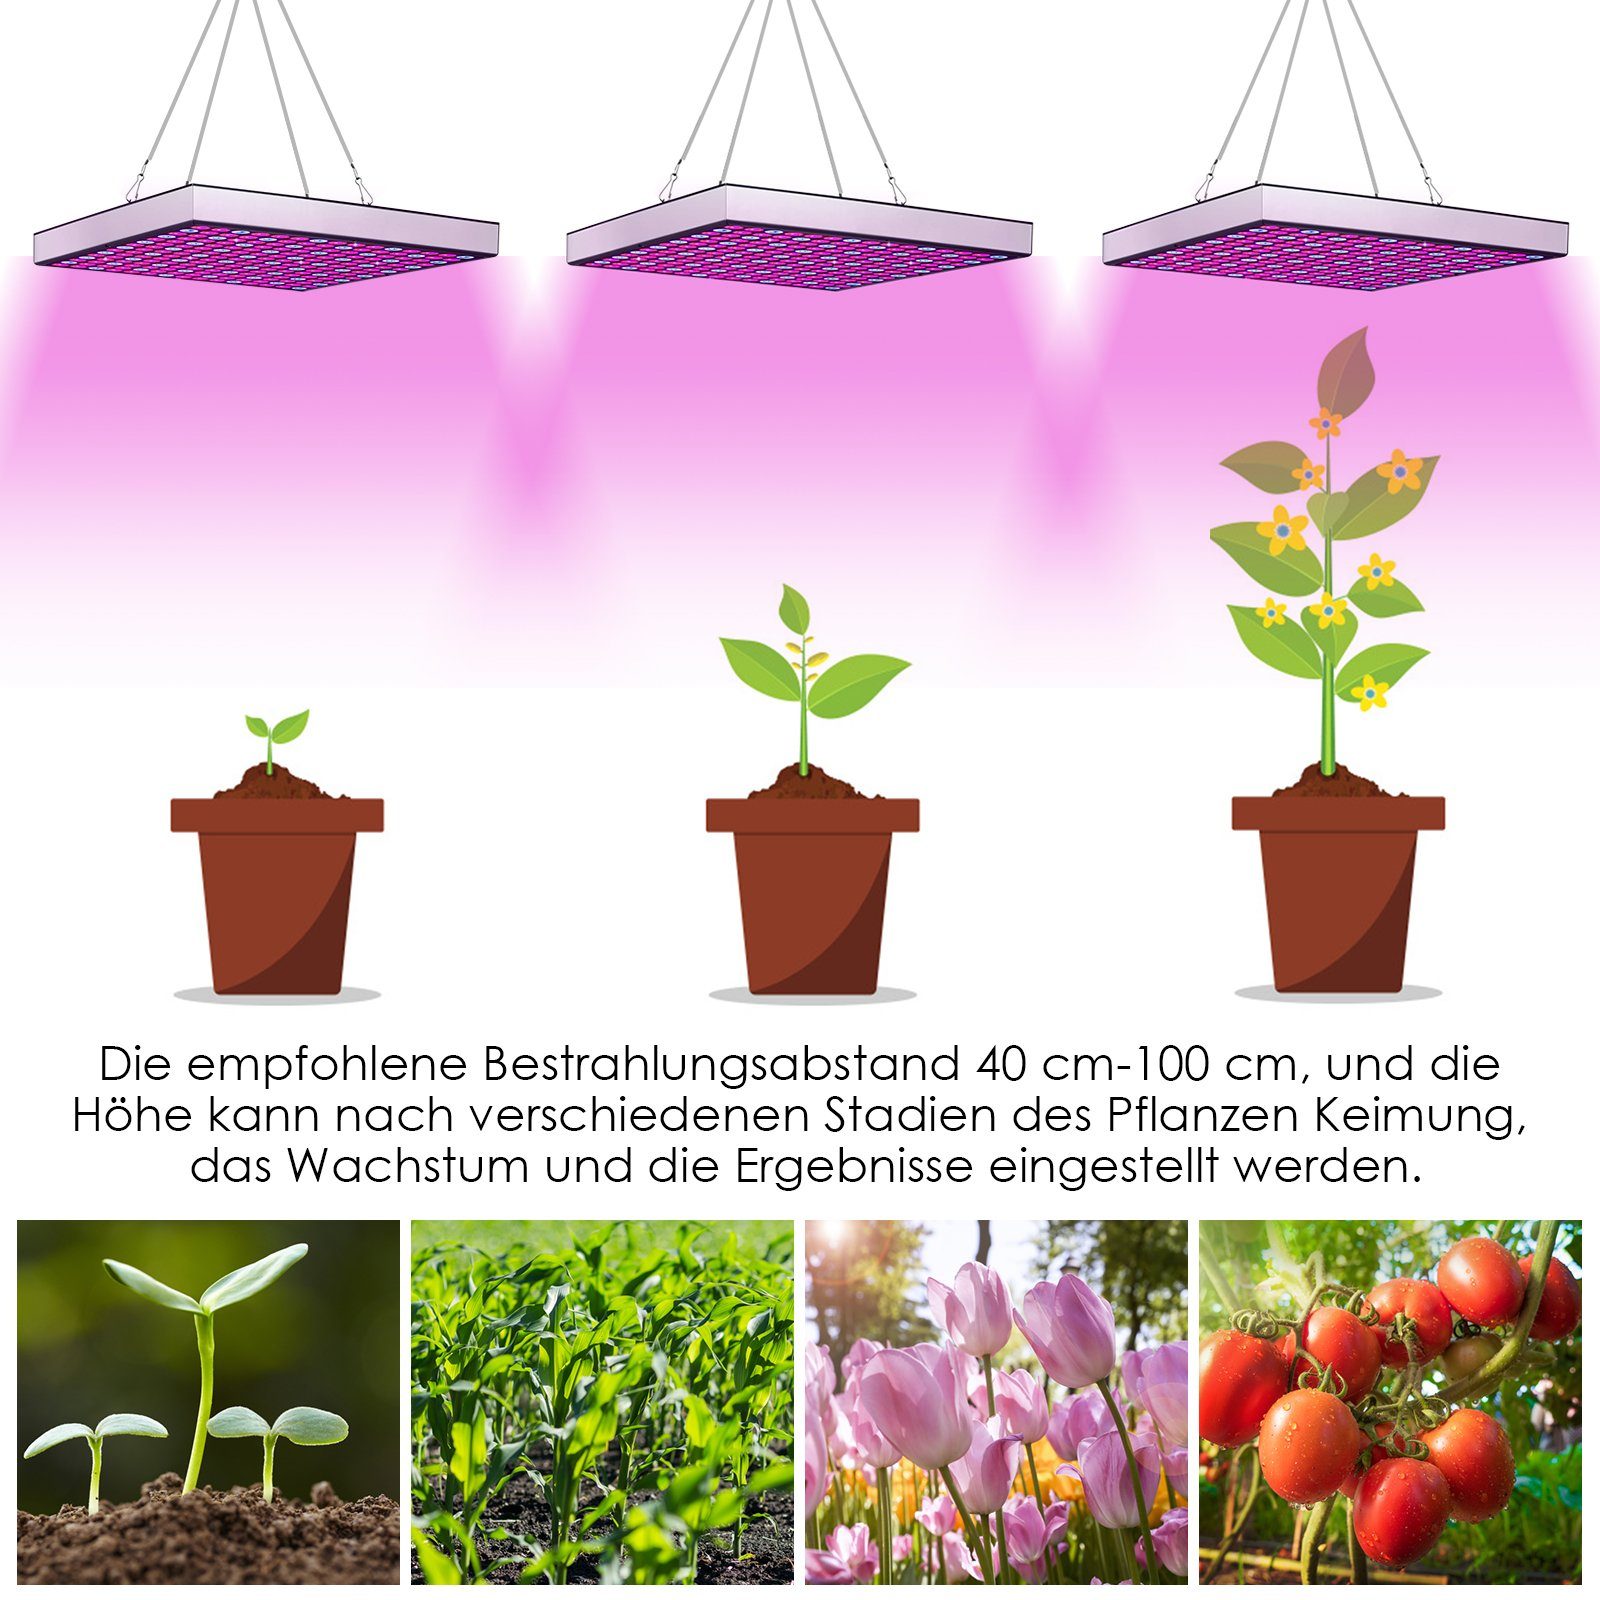 Lospitch Veg 225 Lampe Flower, 15W Rot Tent Vollspektrum Grow Grow Greenhouse Pflanzenlampe Blau, und LED & Pflanzenlampe